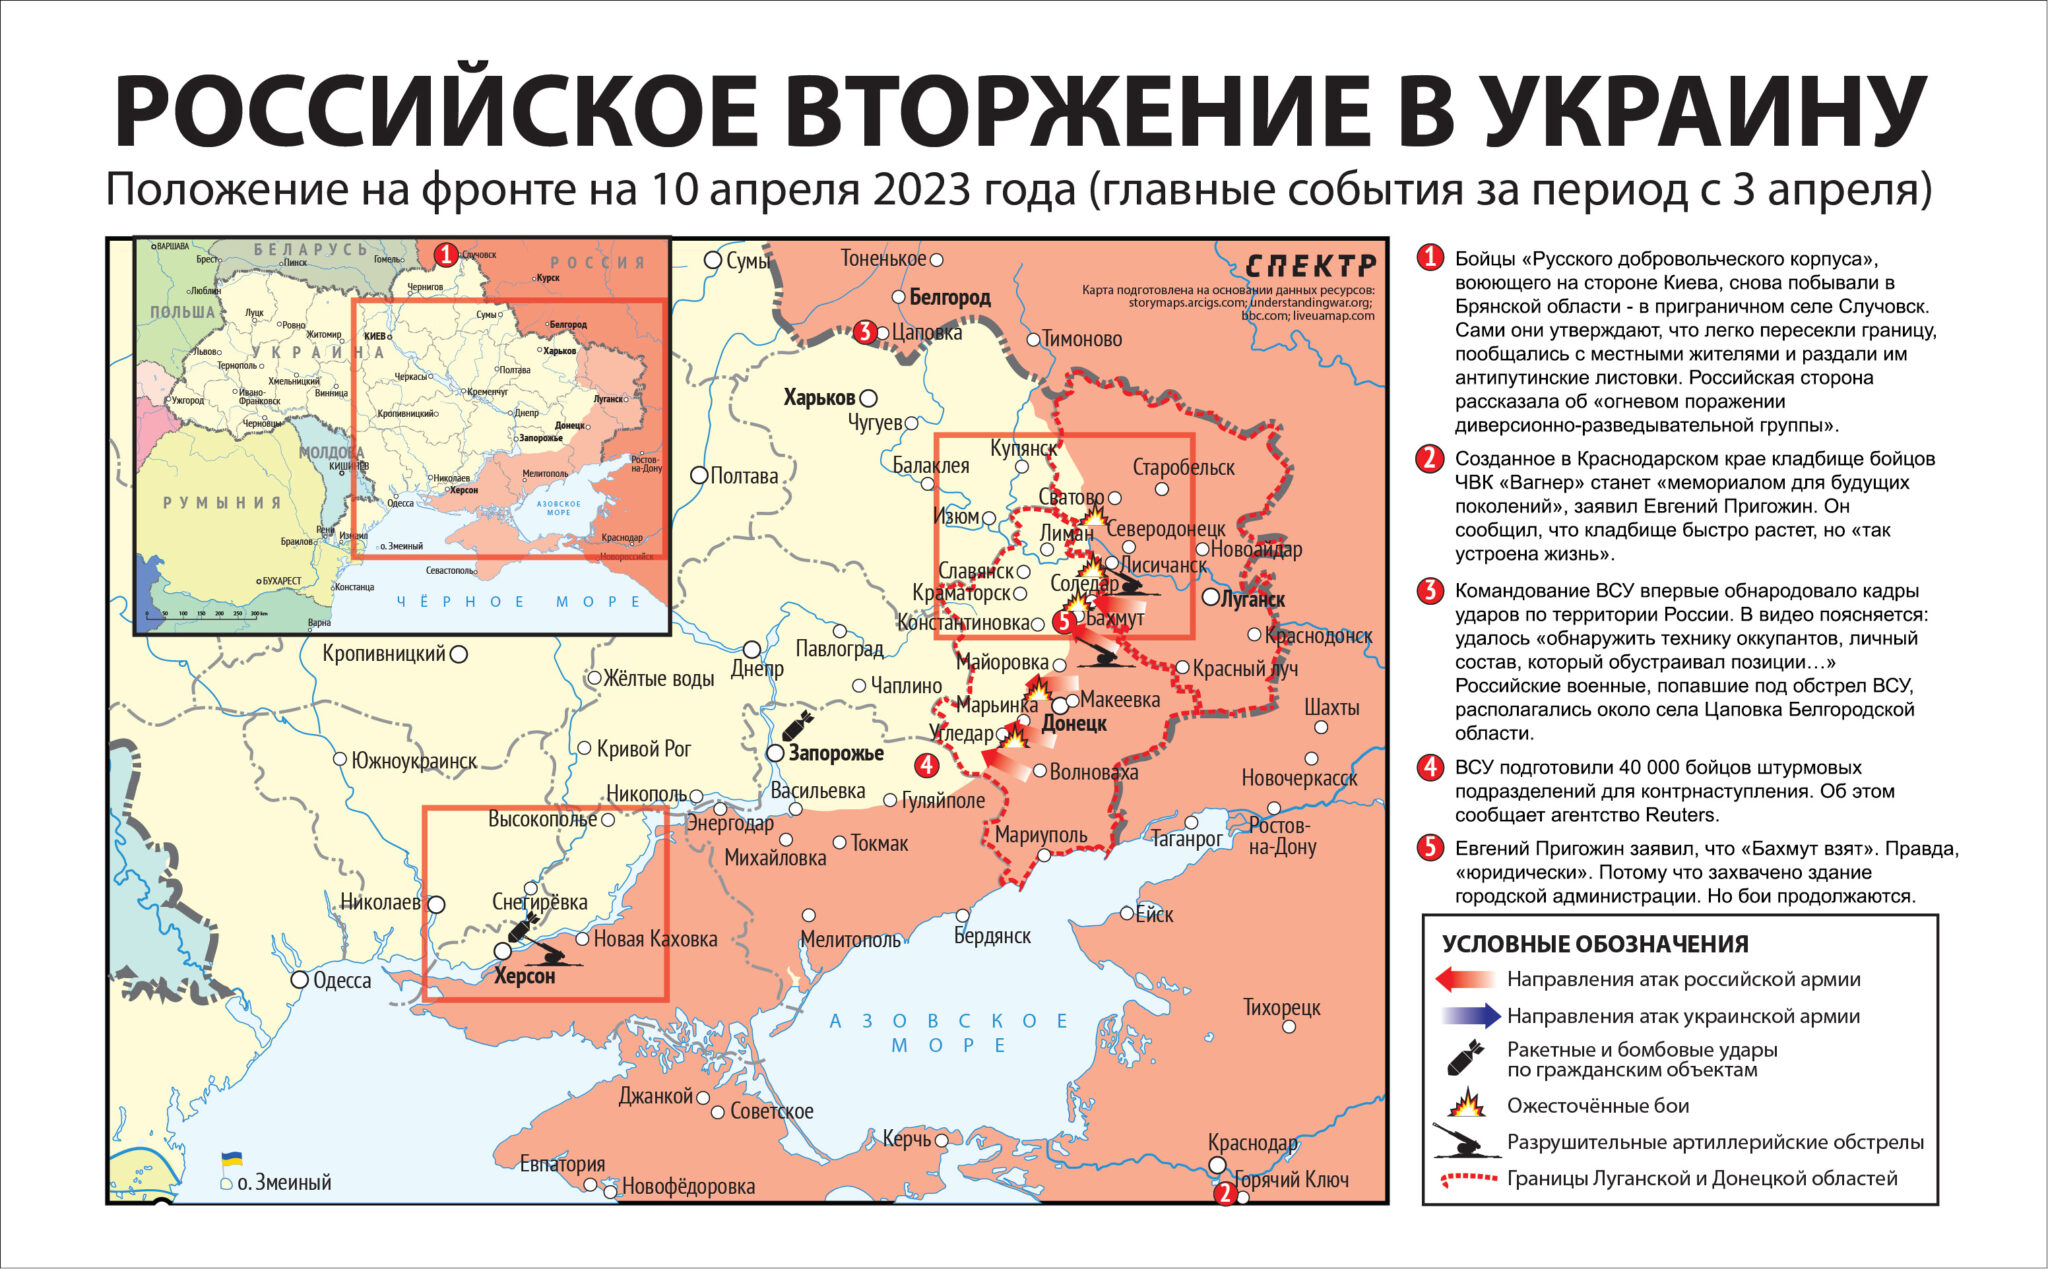 Карта значимых событий войны в Украине 3 — 10 апреля 2023 года